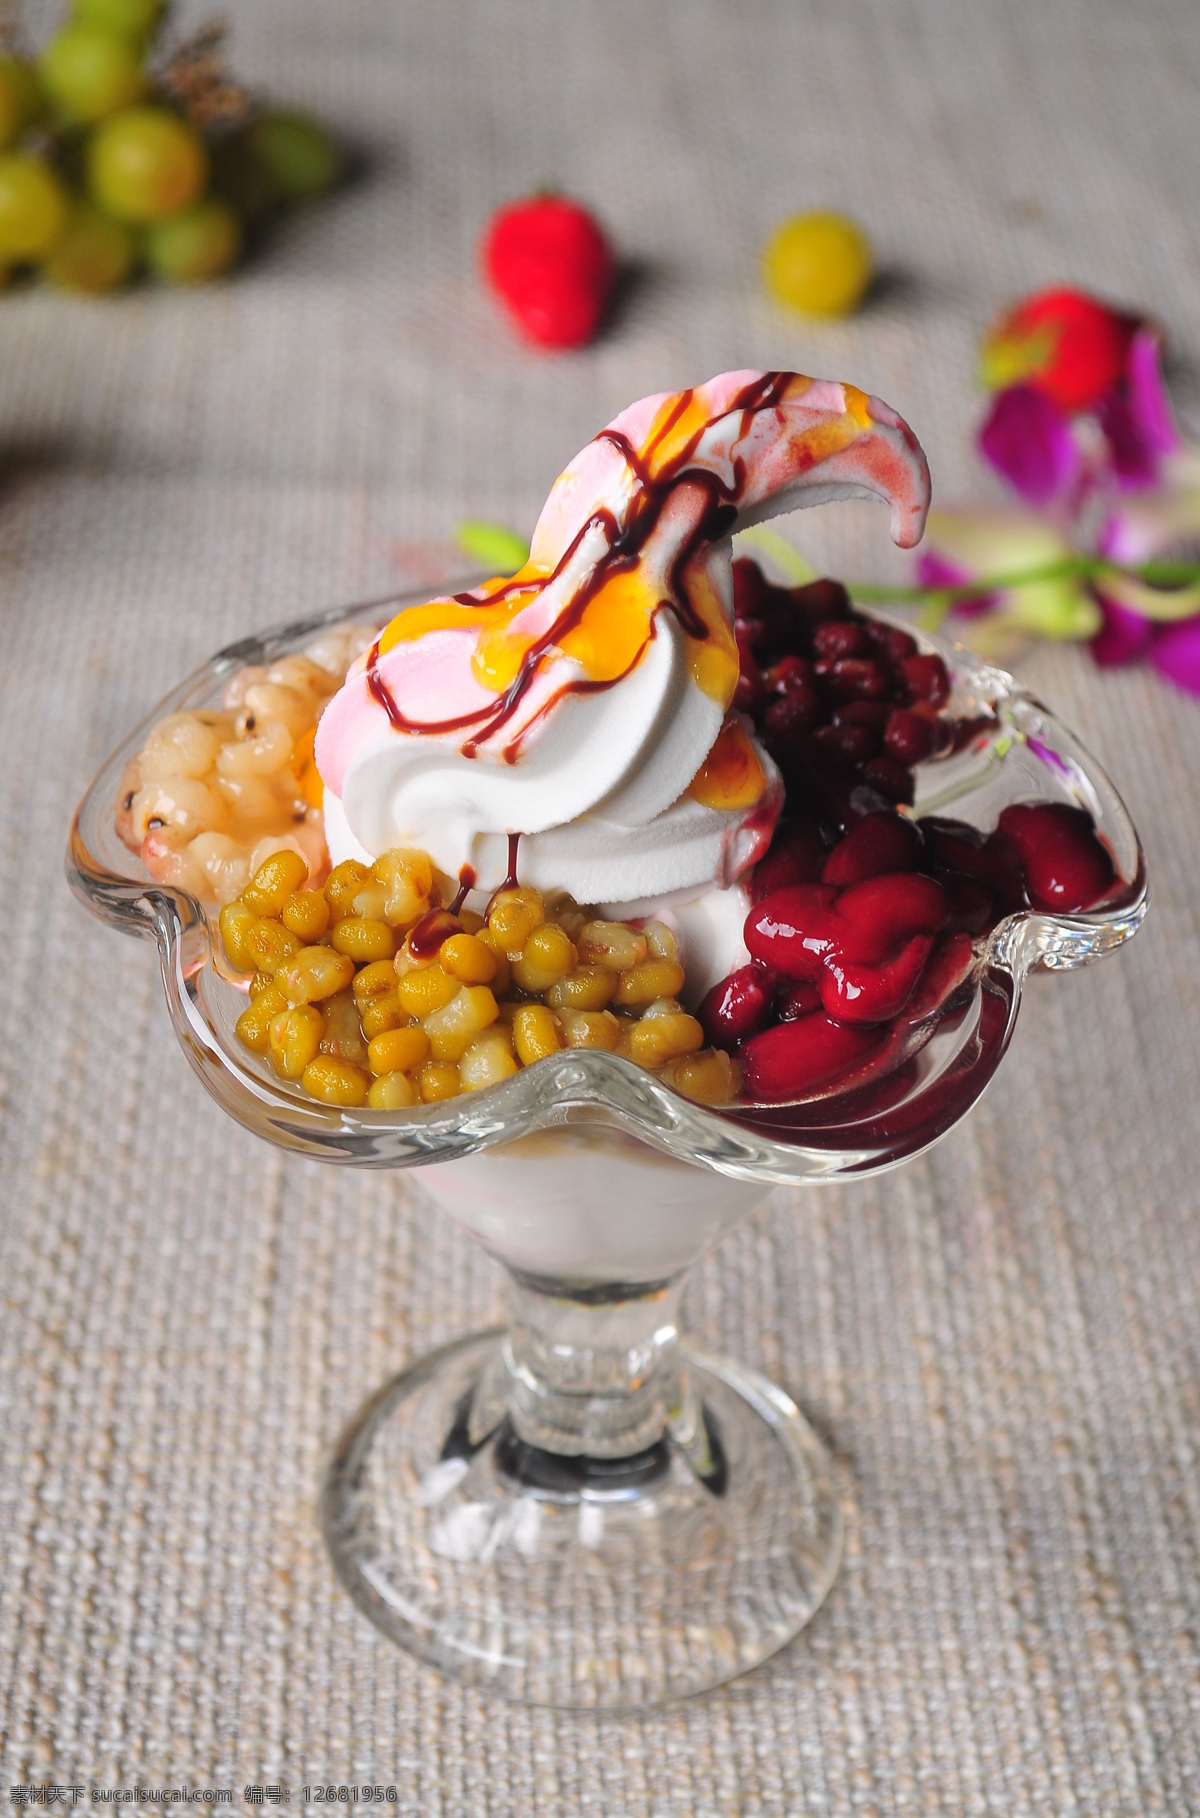 花淇淋 花式冰淇淋 冰淇淋 饮品系列 小吃系列 餐饮美食 西餐美食